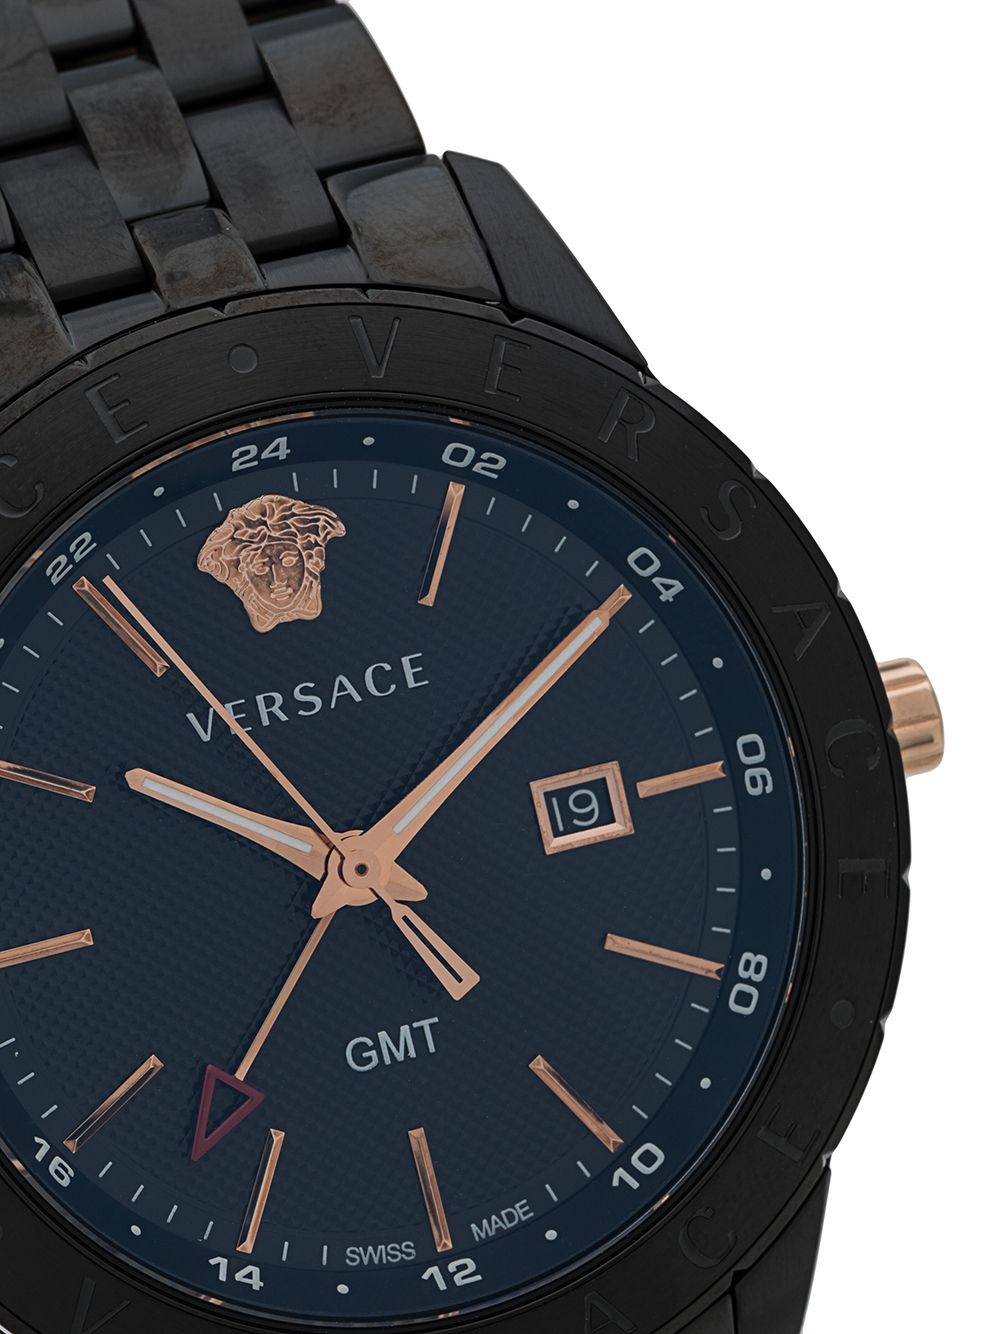 фото Versace наручные часы